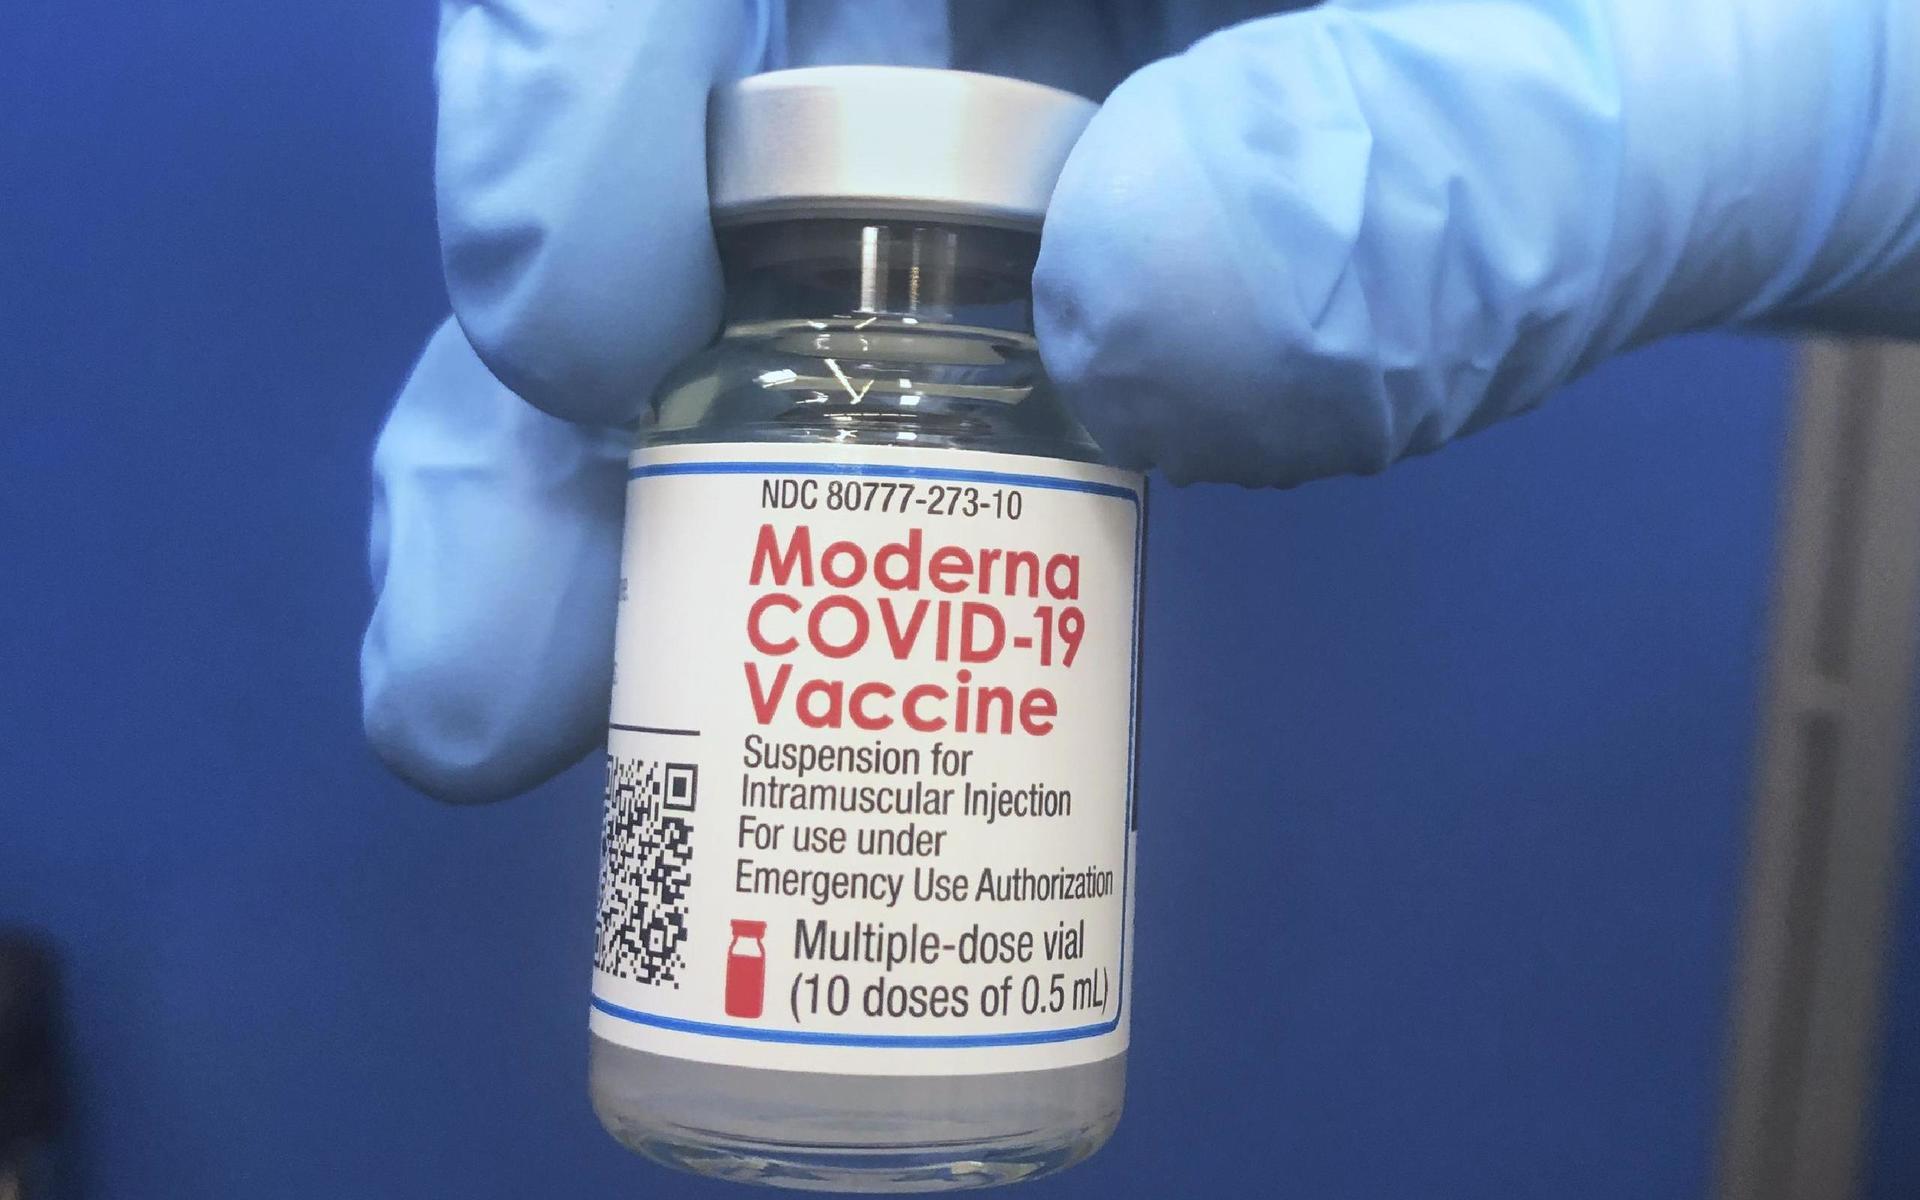 Totalt omfattas omkring 2 100 vaccindoser i fem regioner av den aktuella händelsen.